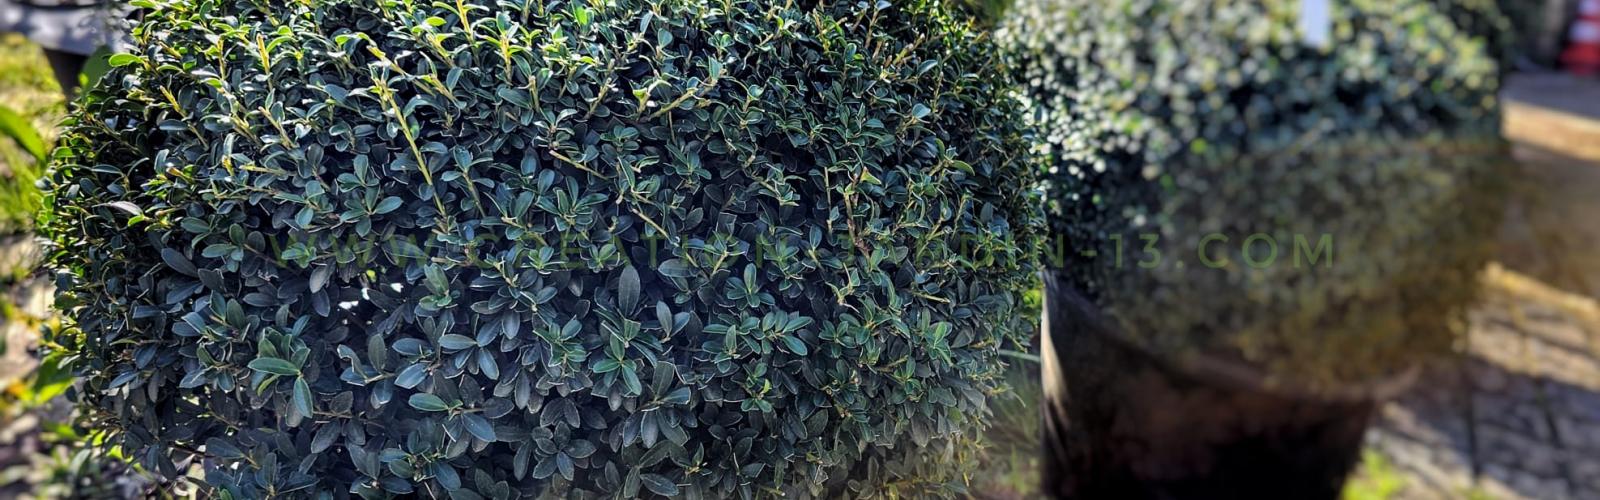 Ilex crenata : Le houx crénelé, une touche élégante et persistante pour votre jardin